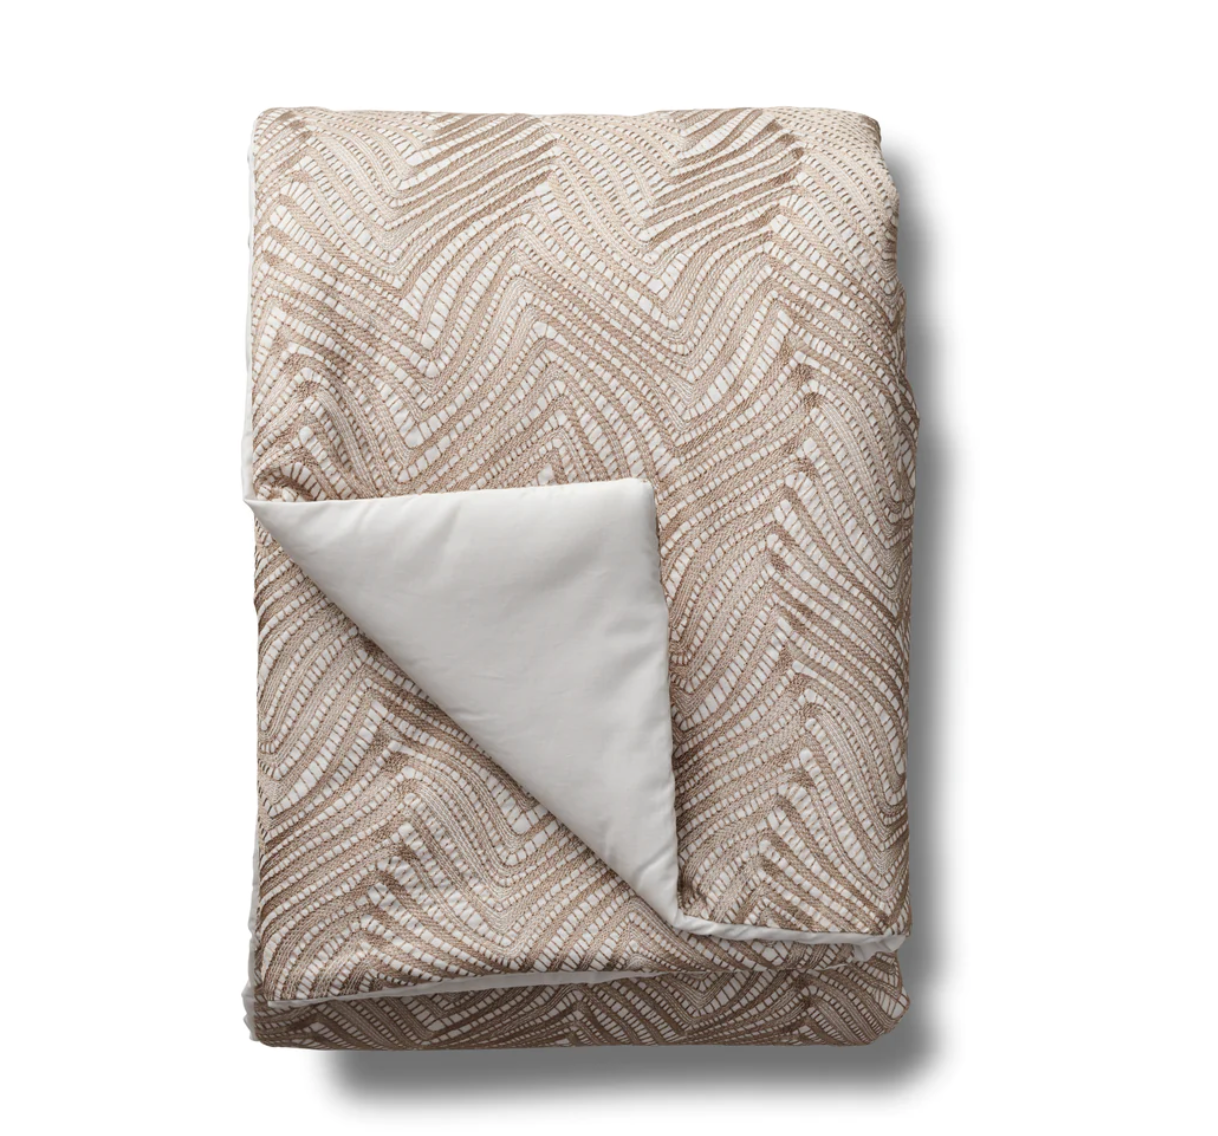 Retortoli throw & pillows by Ann Gish